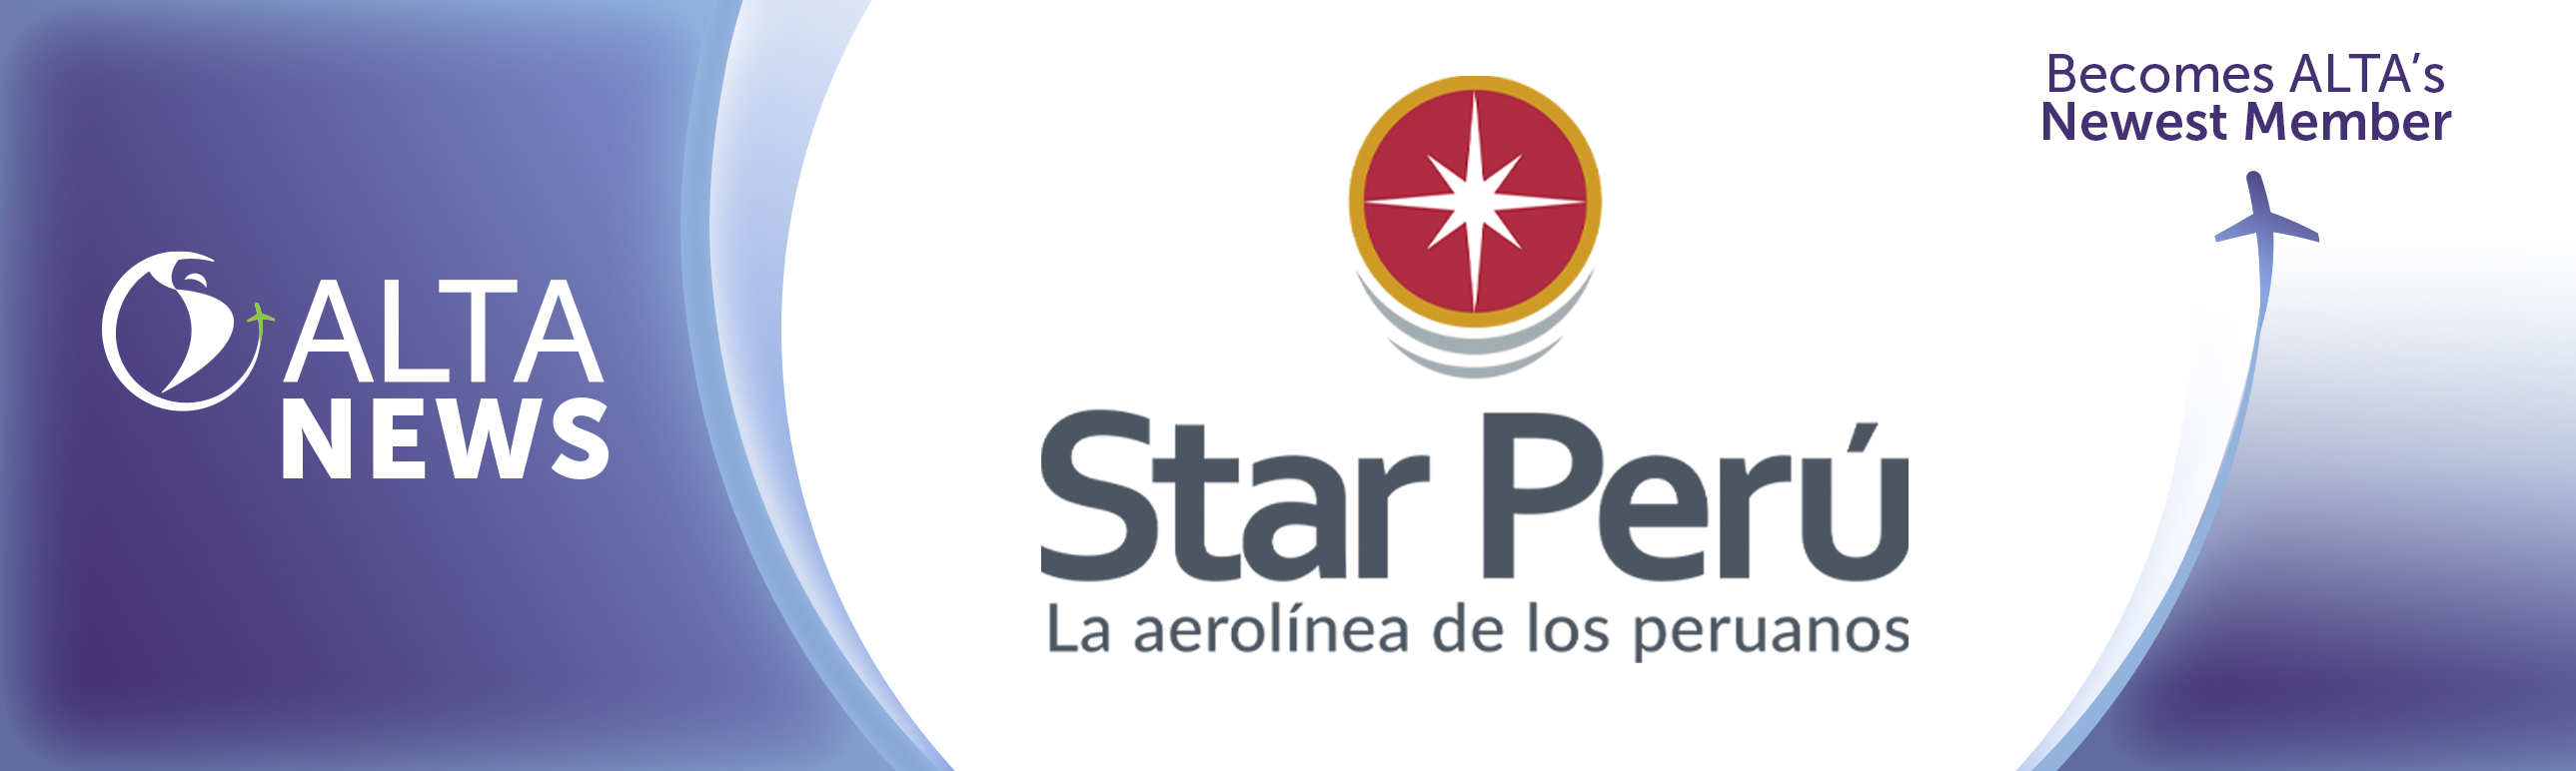 ALTA NEWS - ALTA da la bienvenida a una nueva aerolínea: Star Perú